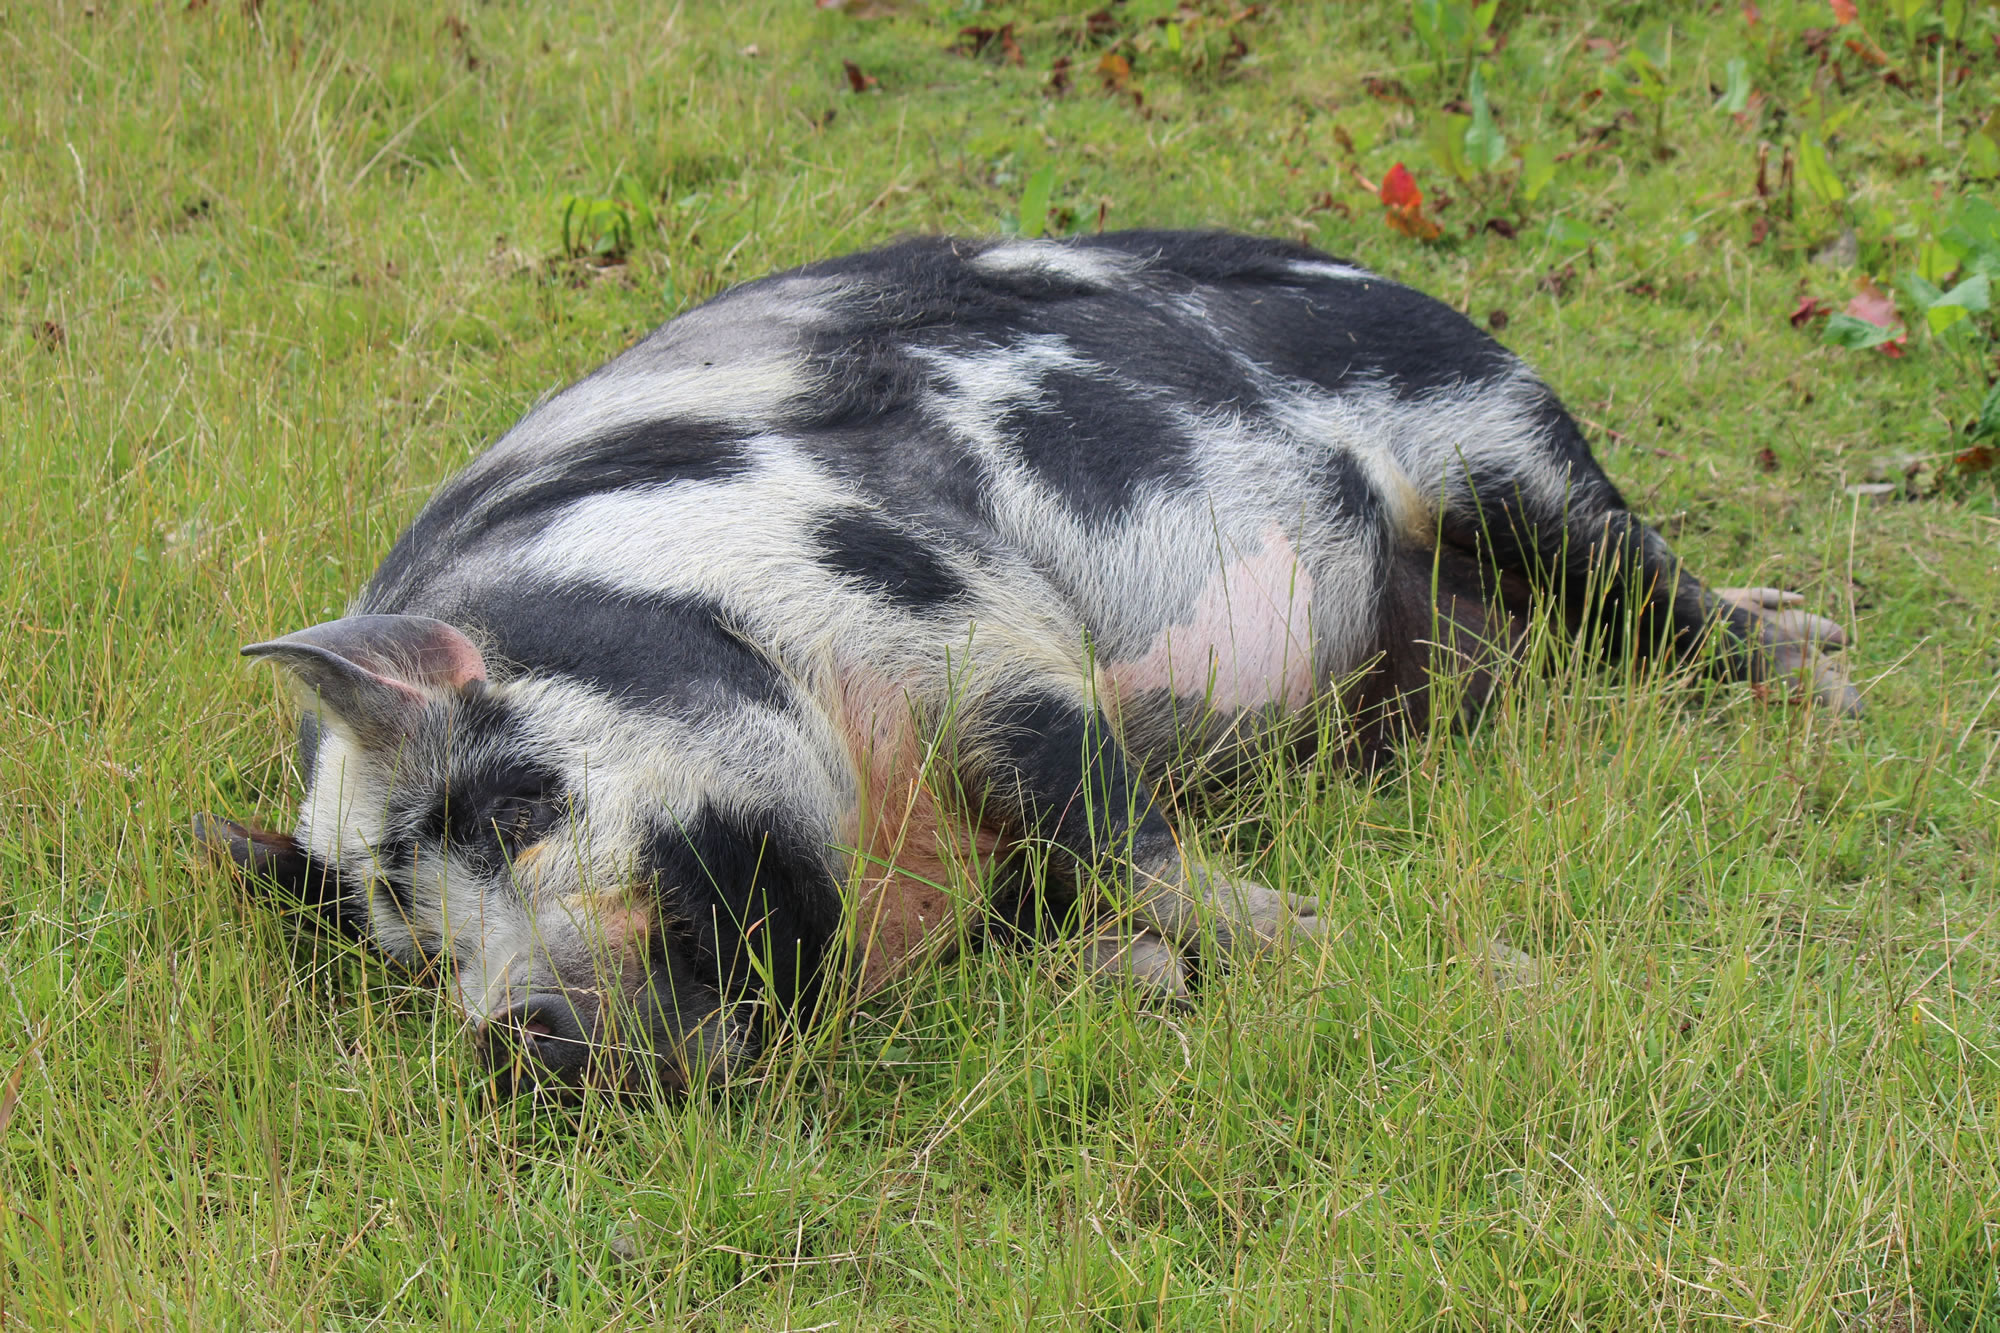 Picture of kunekune pig enjoying the sunshine